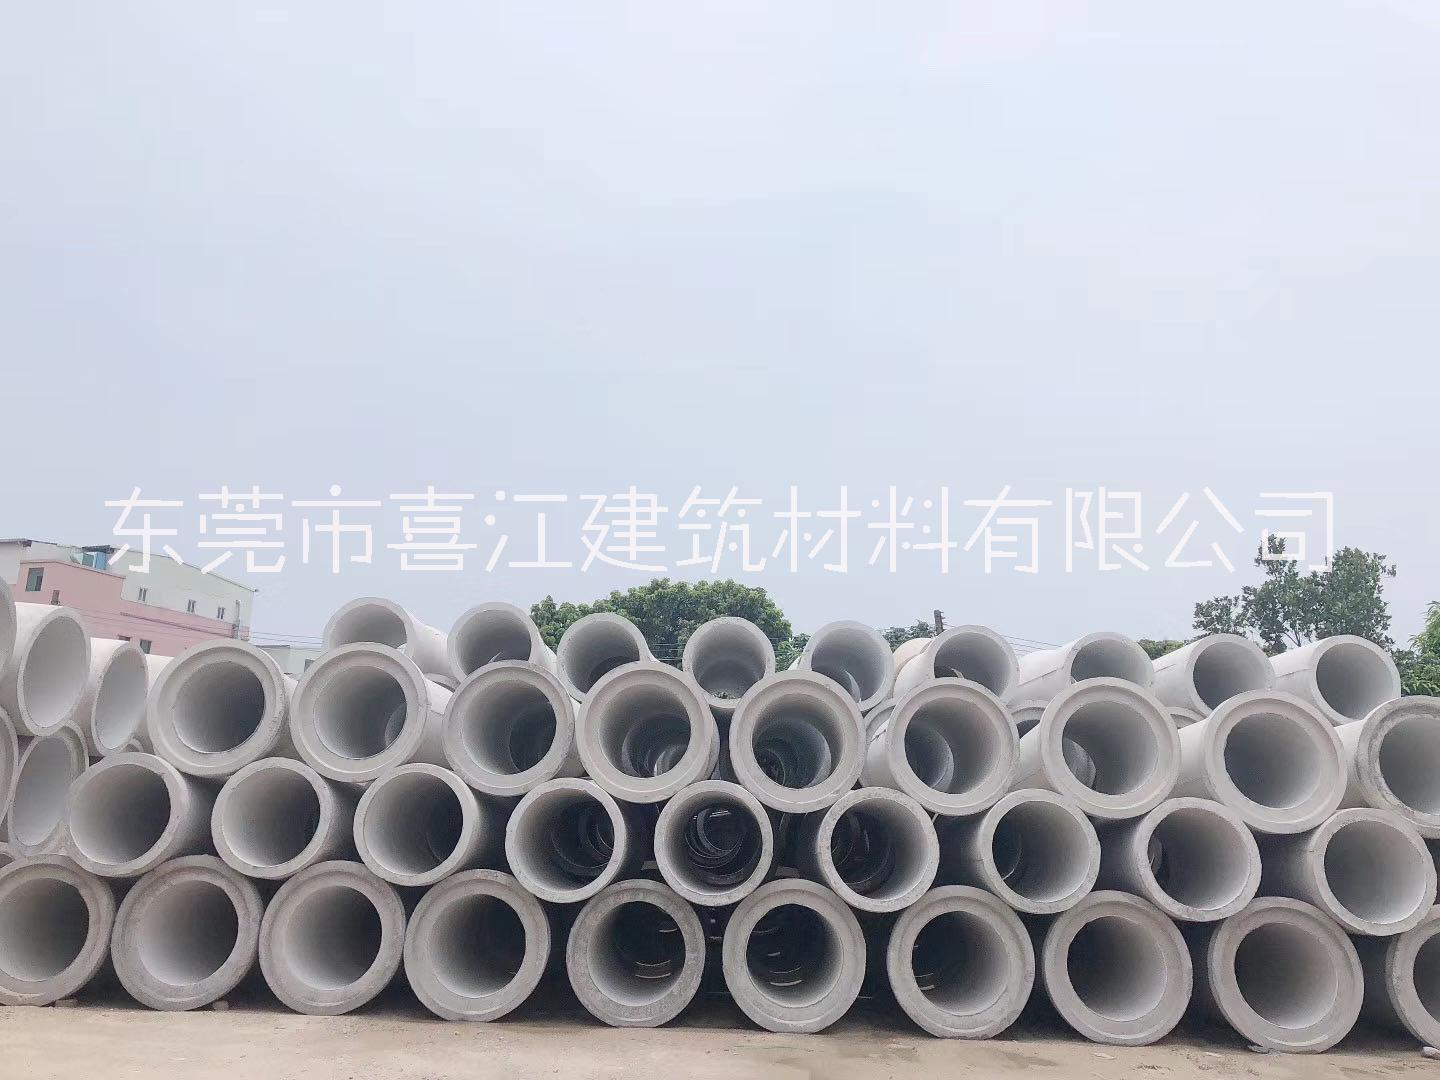 广州混凝土水泥管厂家-广州混凝土水泥管供应商-广州混凝土水泥管哪里有-广州混凝土水泥管多少钱